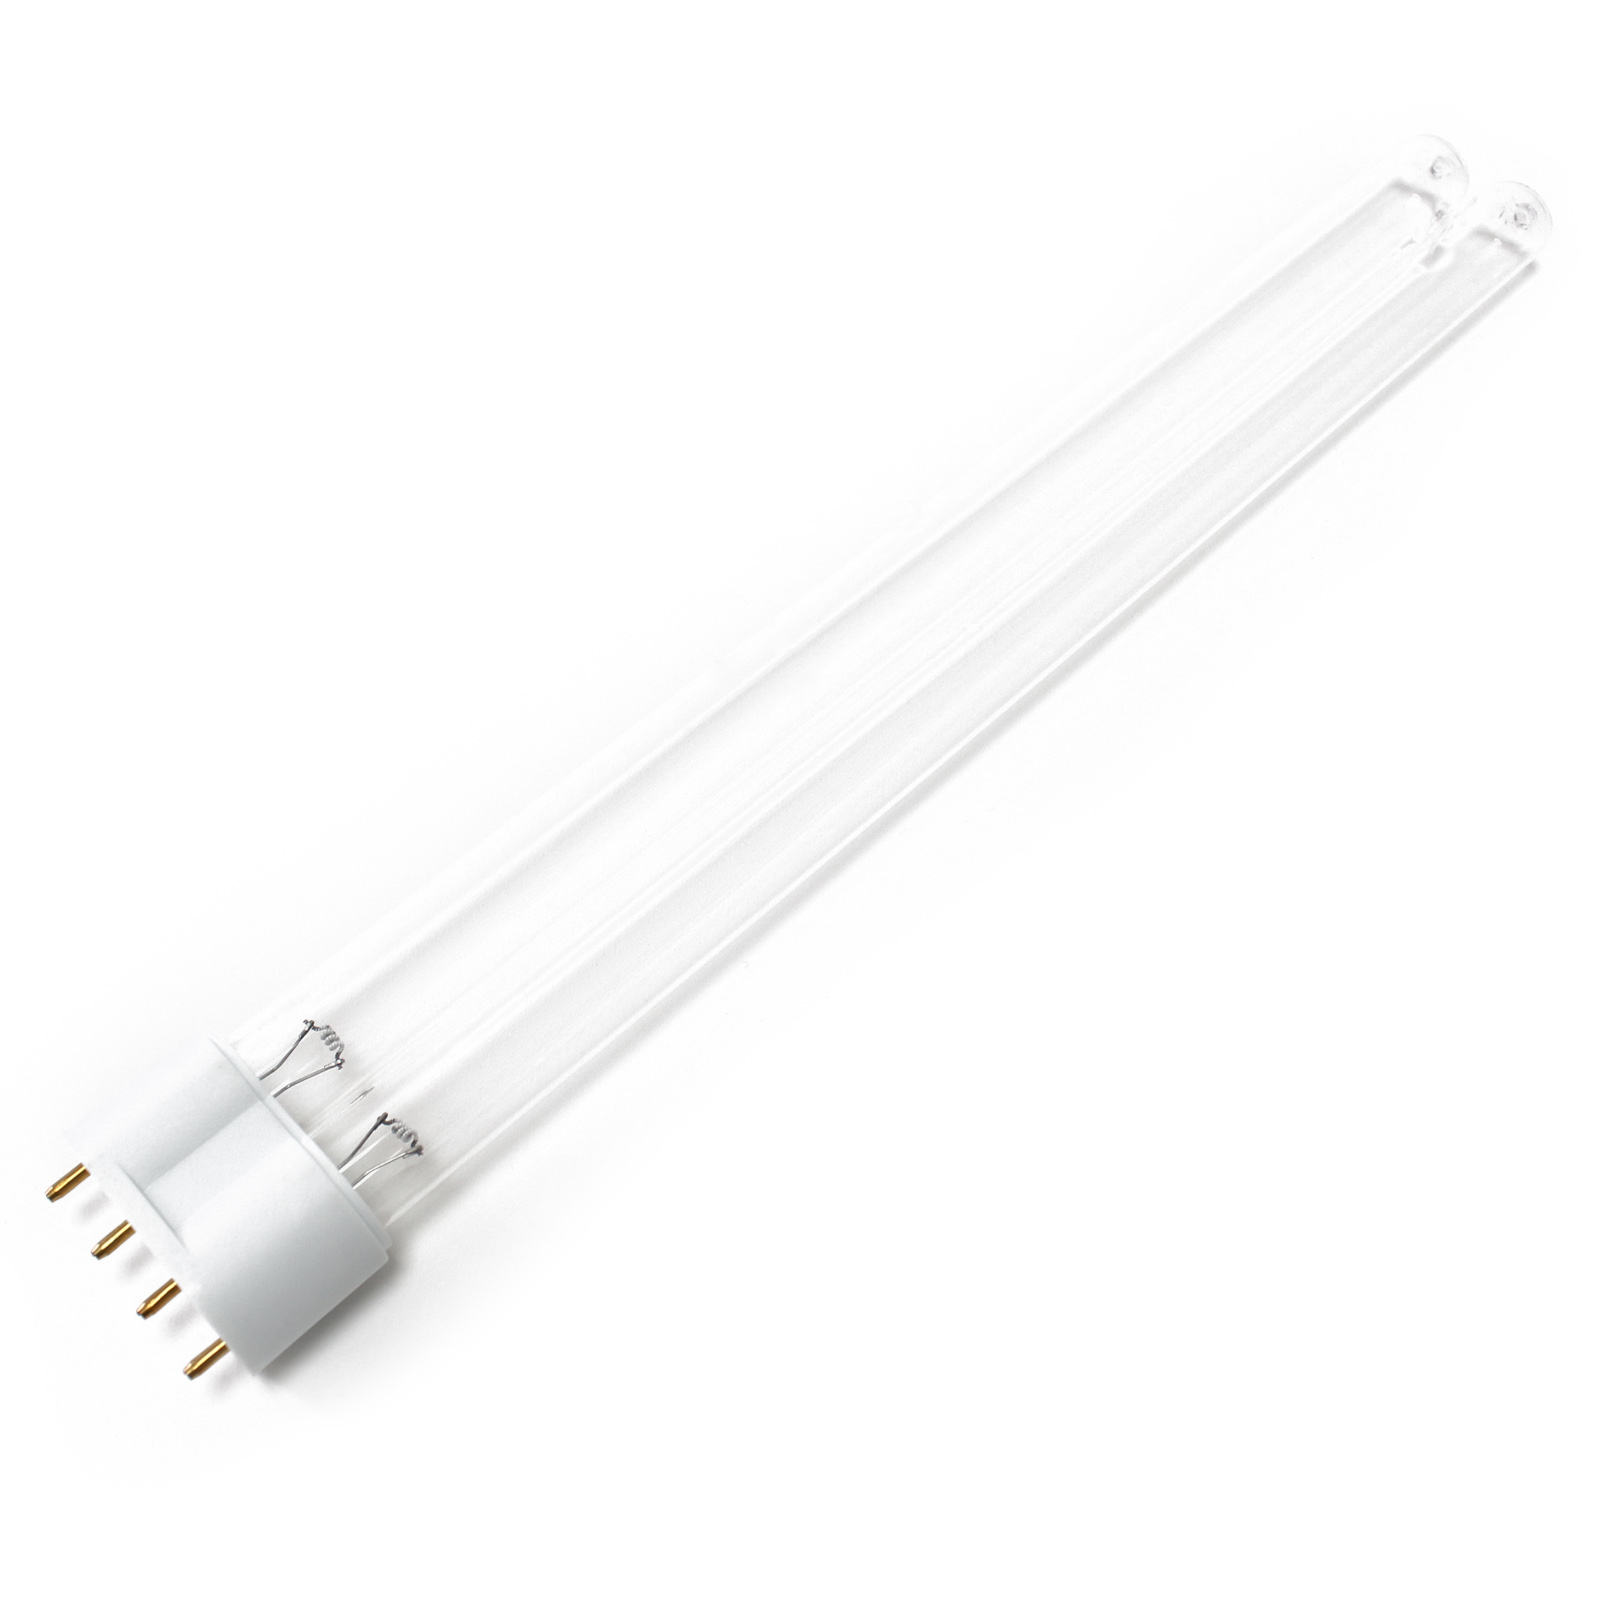 CUV-624 UV-C Lampe Röhre 24W Teich-Klärer UVC Leuchtmittel